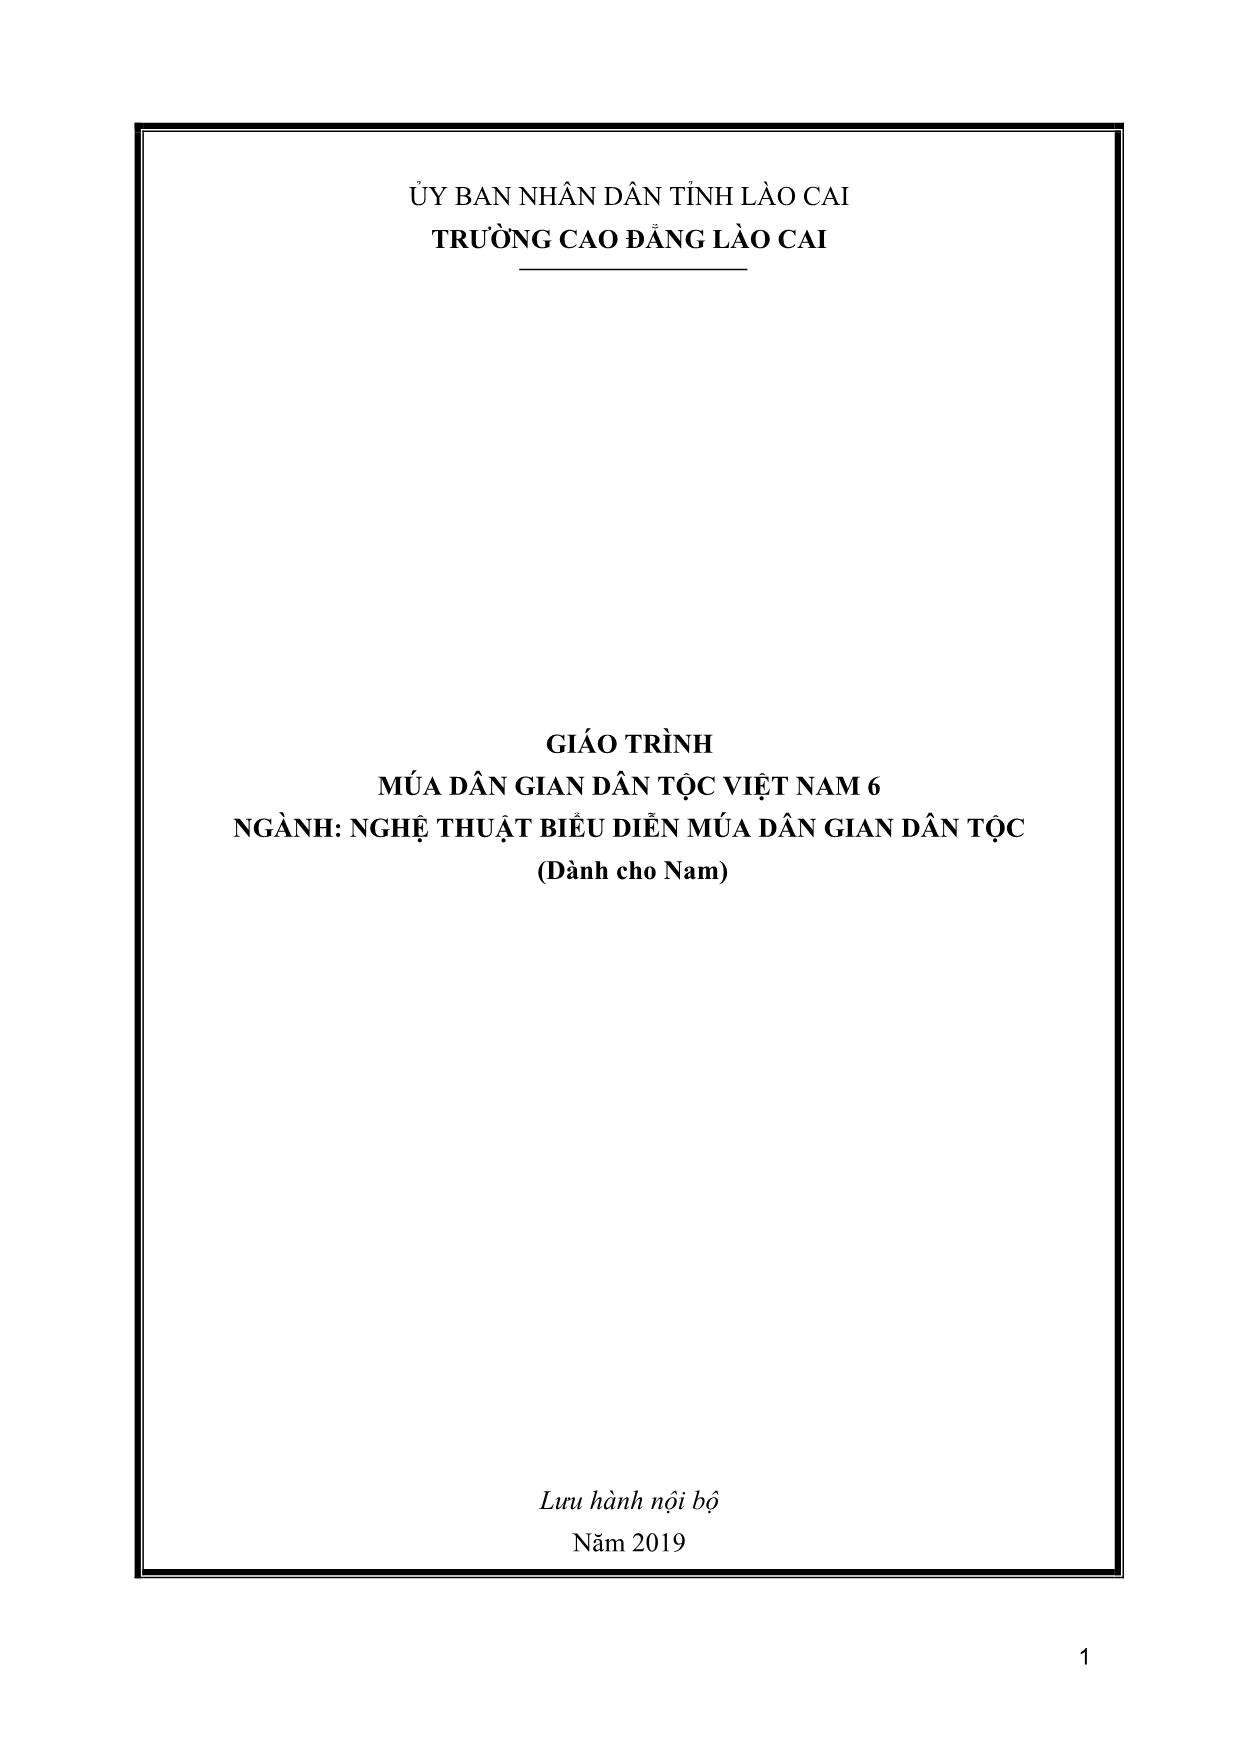 Giáo trình Múa dân gian dân tộc Việt Nam 6 trang 1